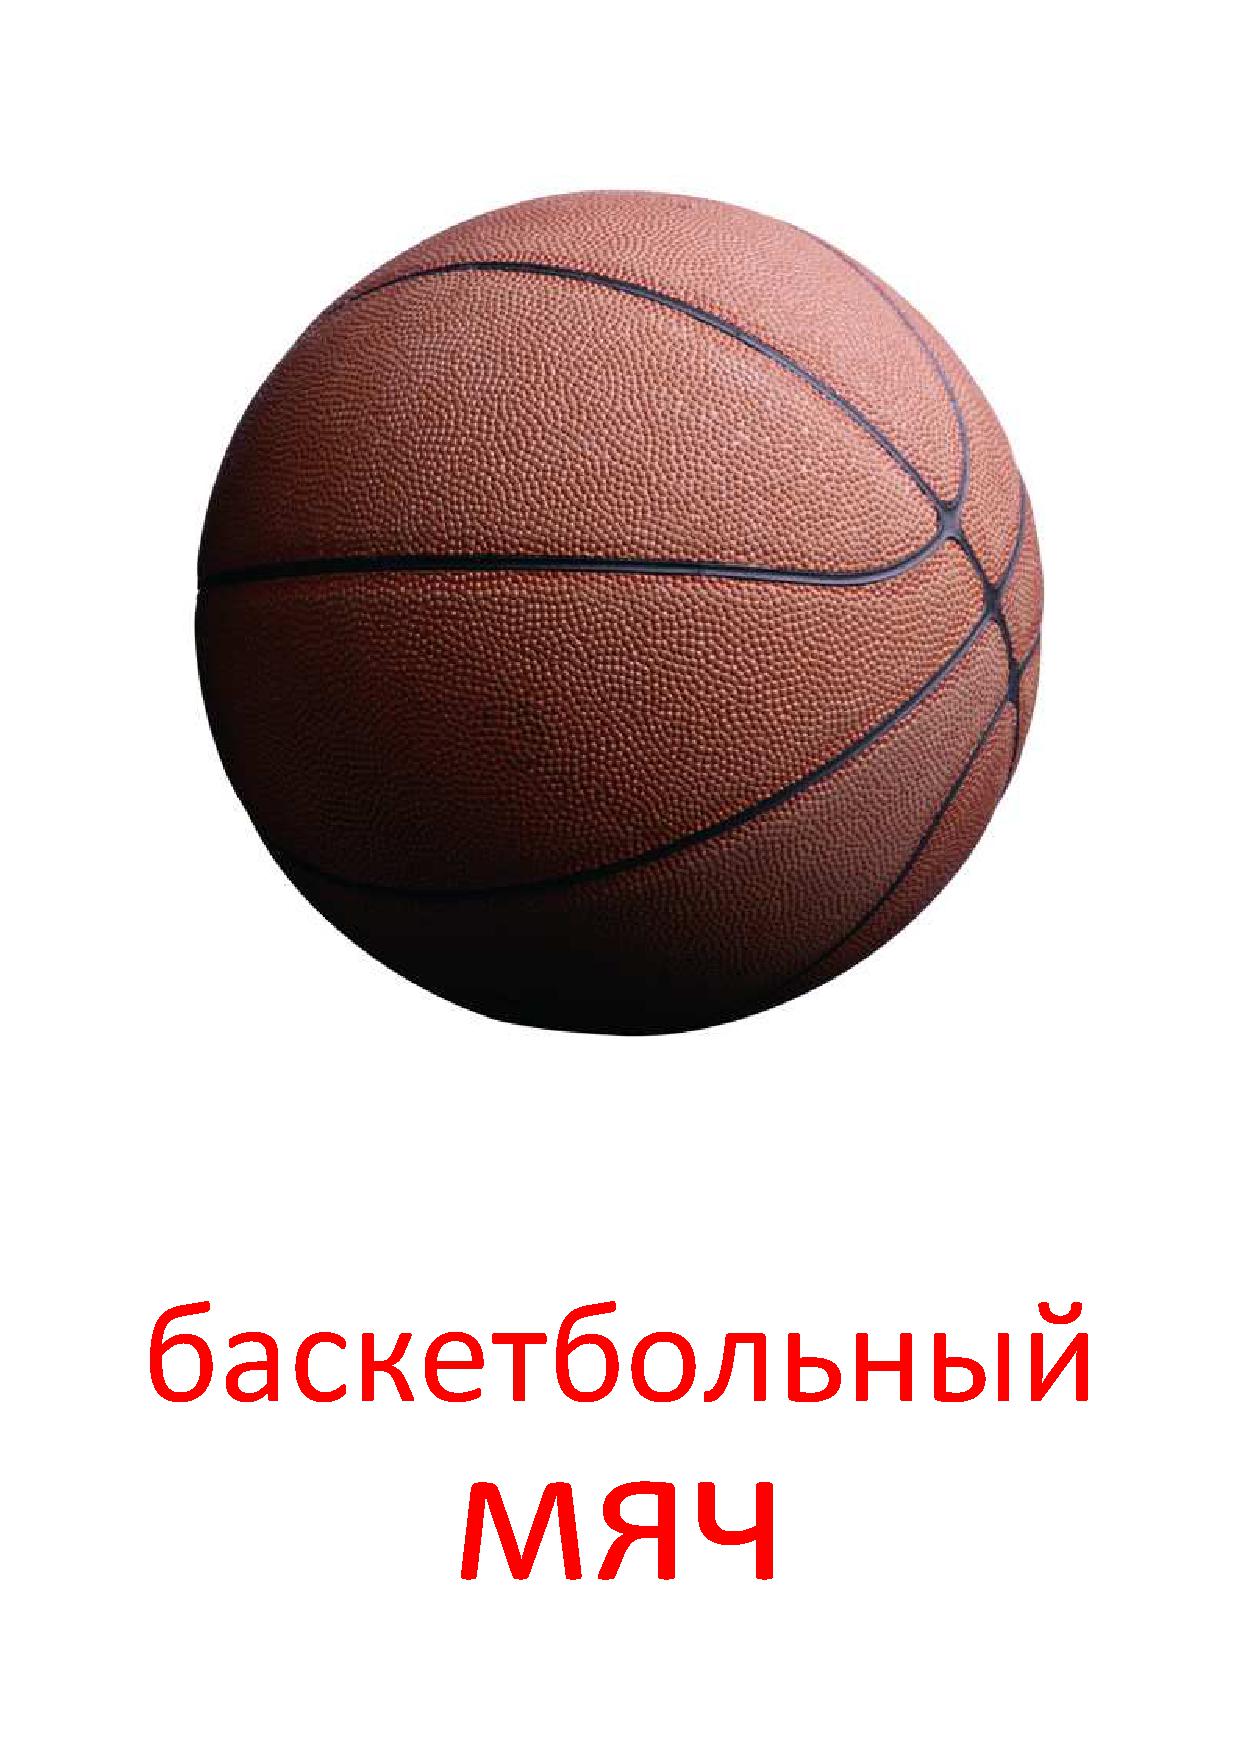 Карточка ball. Баскетбольный мяч. Спортивный баскетбольный мяч. Спортивный инвентарь. Детские баскетбольные мячи.